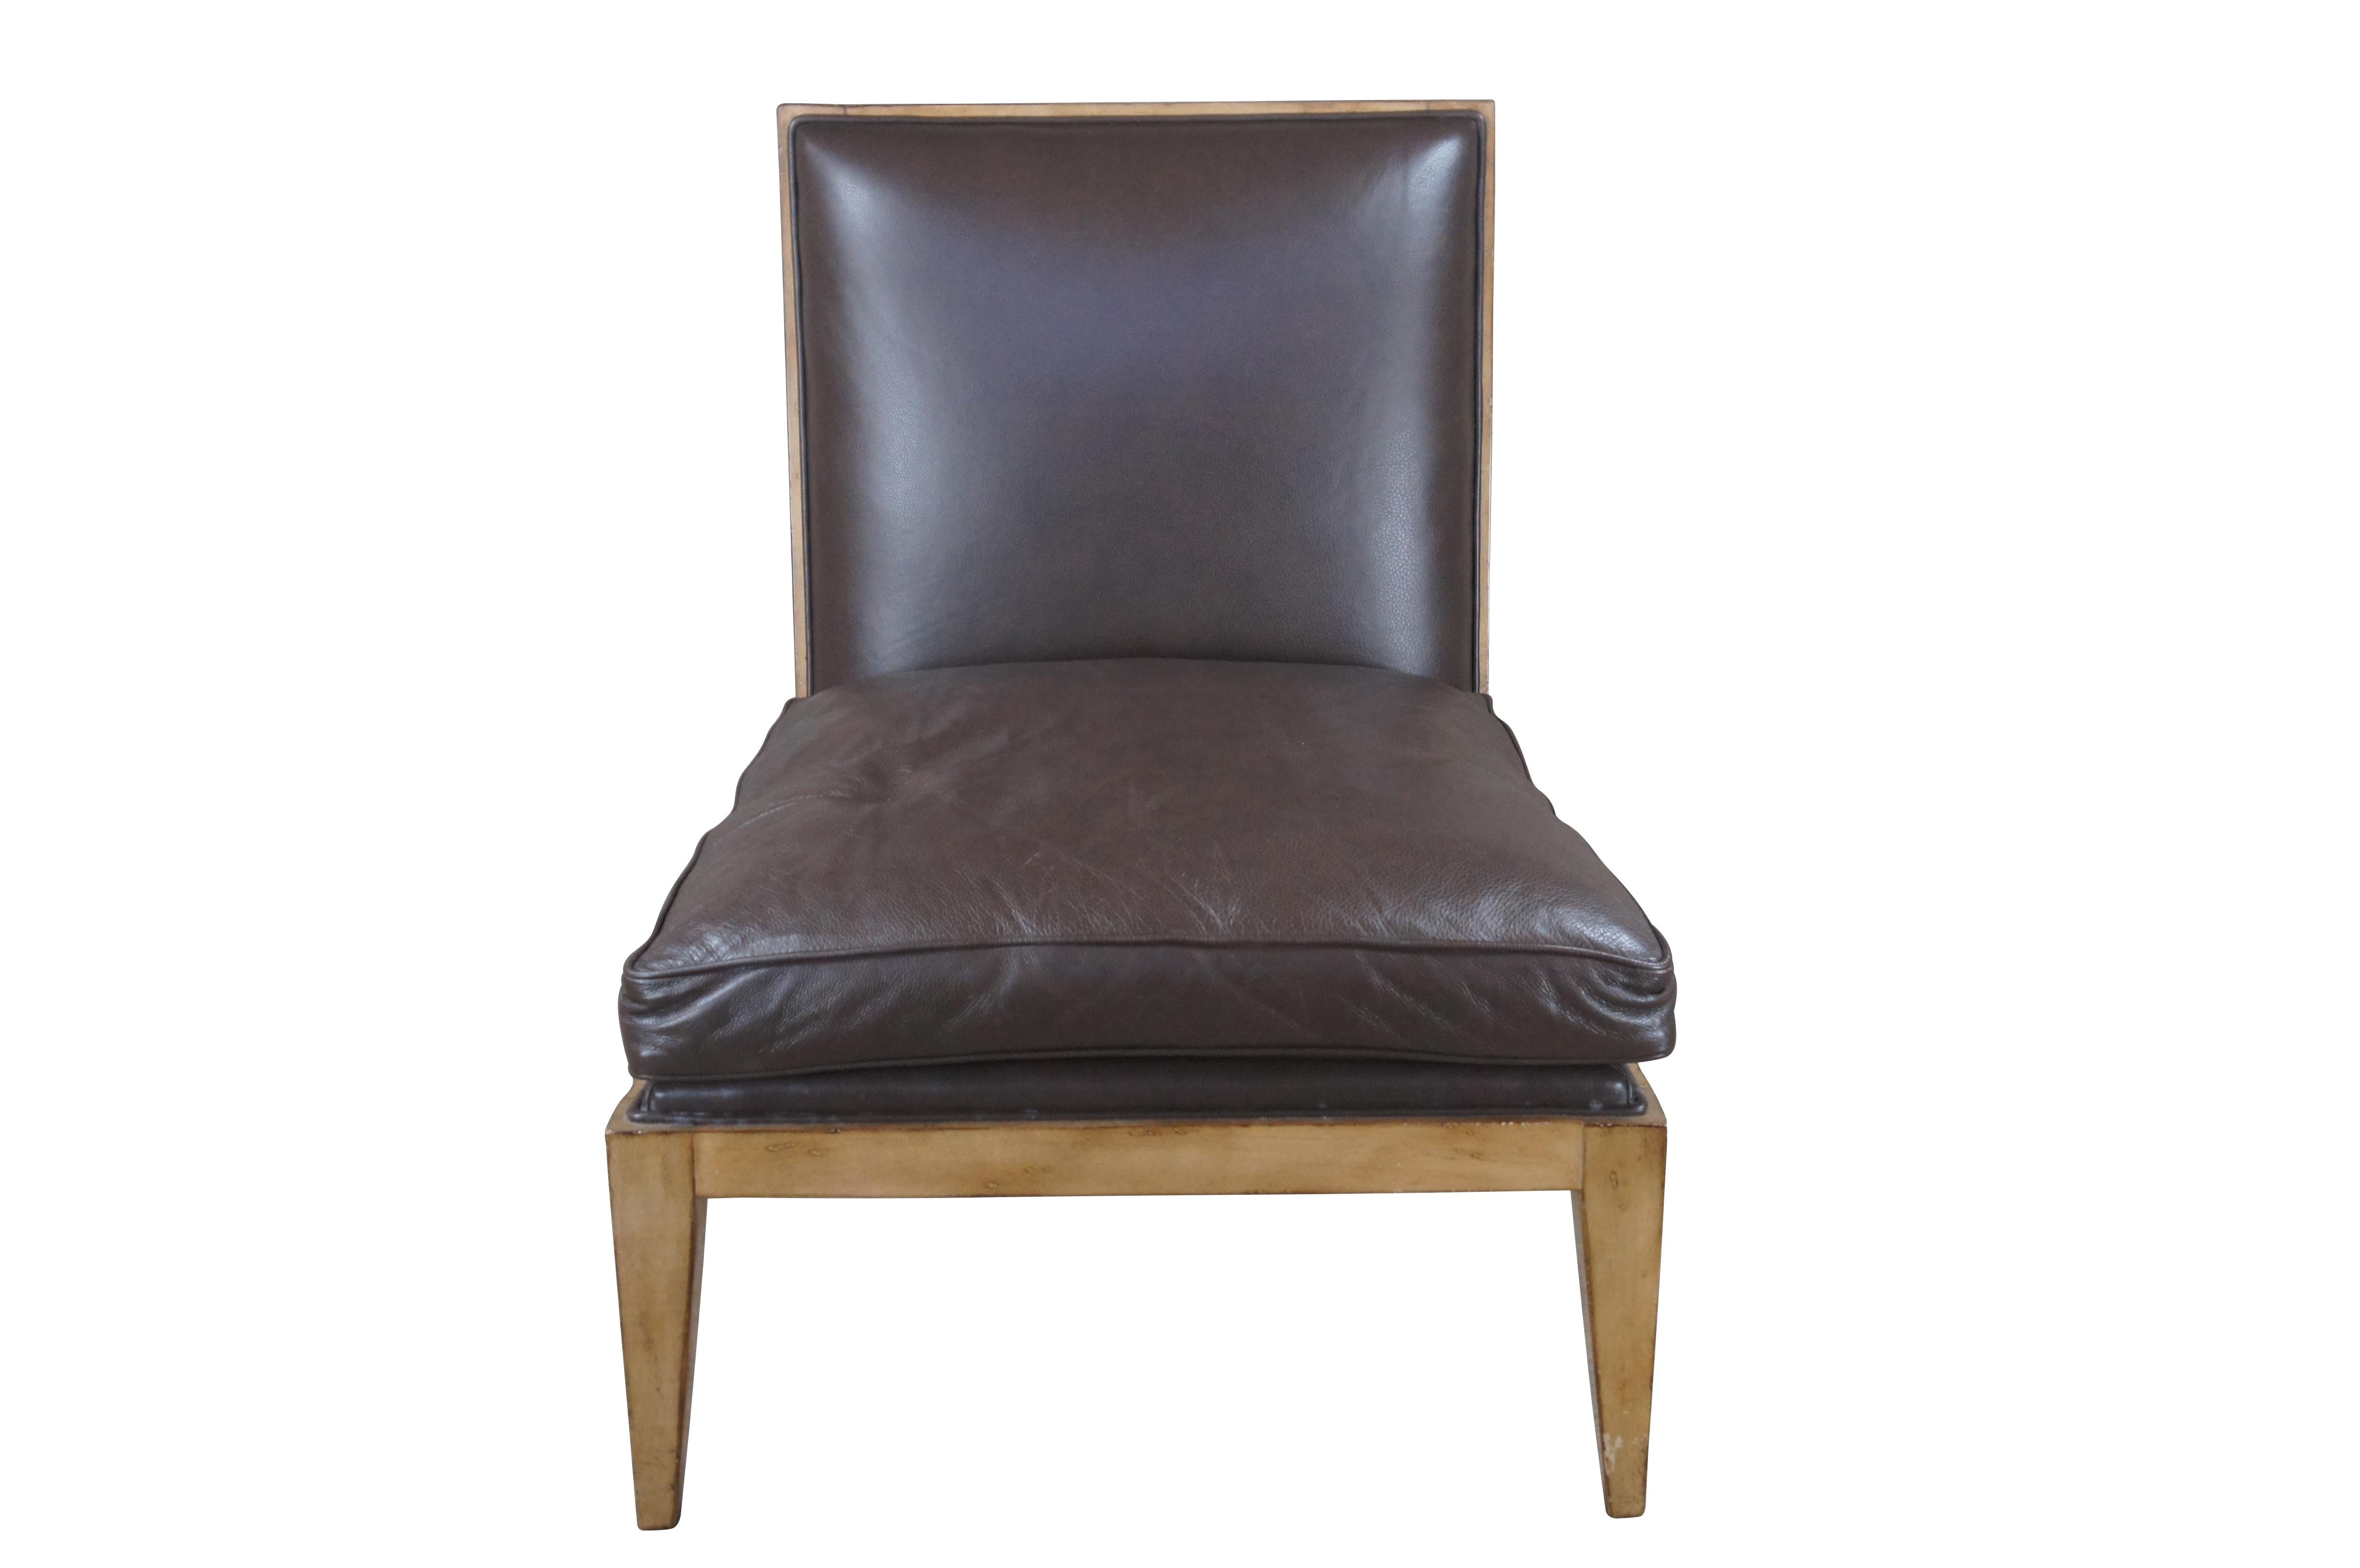 Un magnifique fauteuil sans accoudoirs de Swaim Upholstery. Réalisé à l'origine pour Marc-Miachaels Interior Design. Revêtement en cuir marron et cadre en chêne. La chaise est soutenue par des pieds coniques carrés. Un design moderne et homogène qui